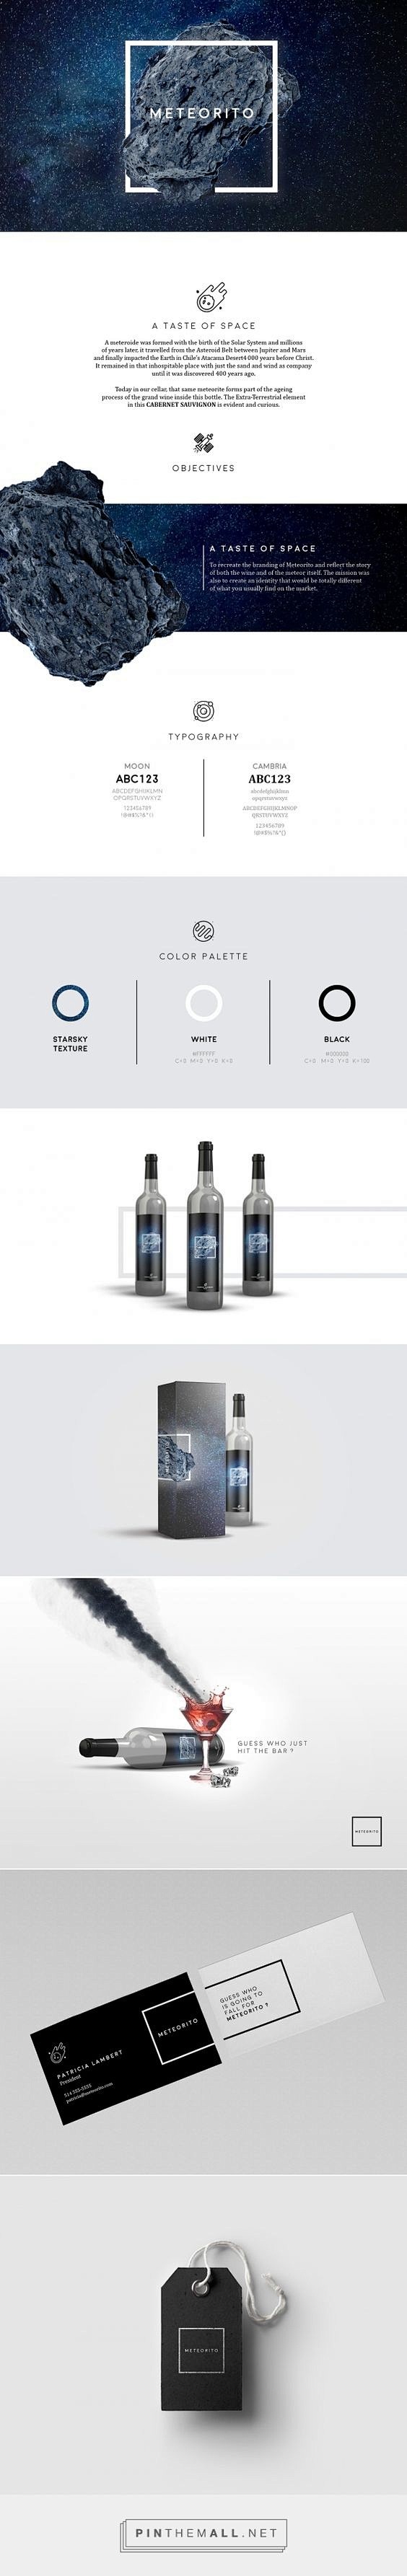 国外葡萄酒产品详情页描述页面设计欣赏 -...